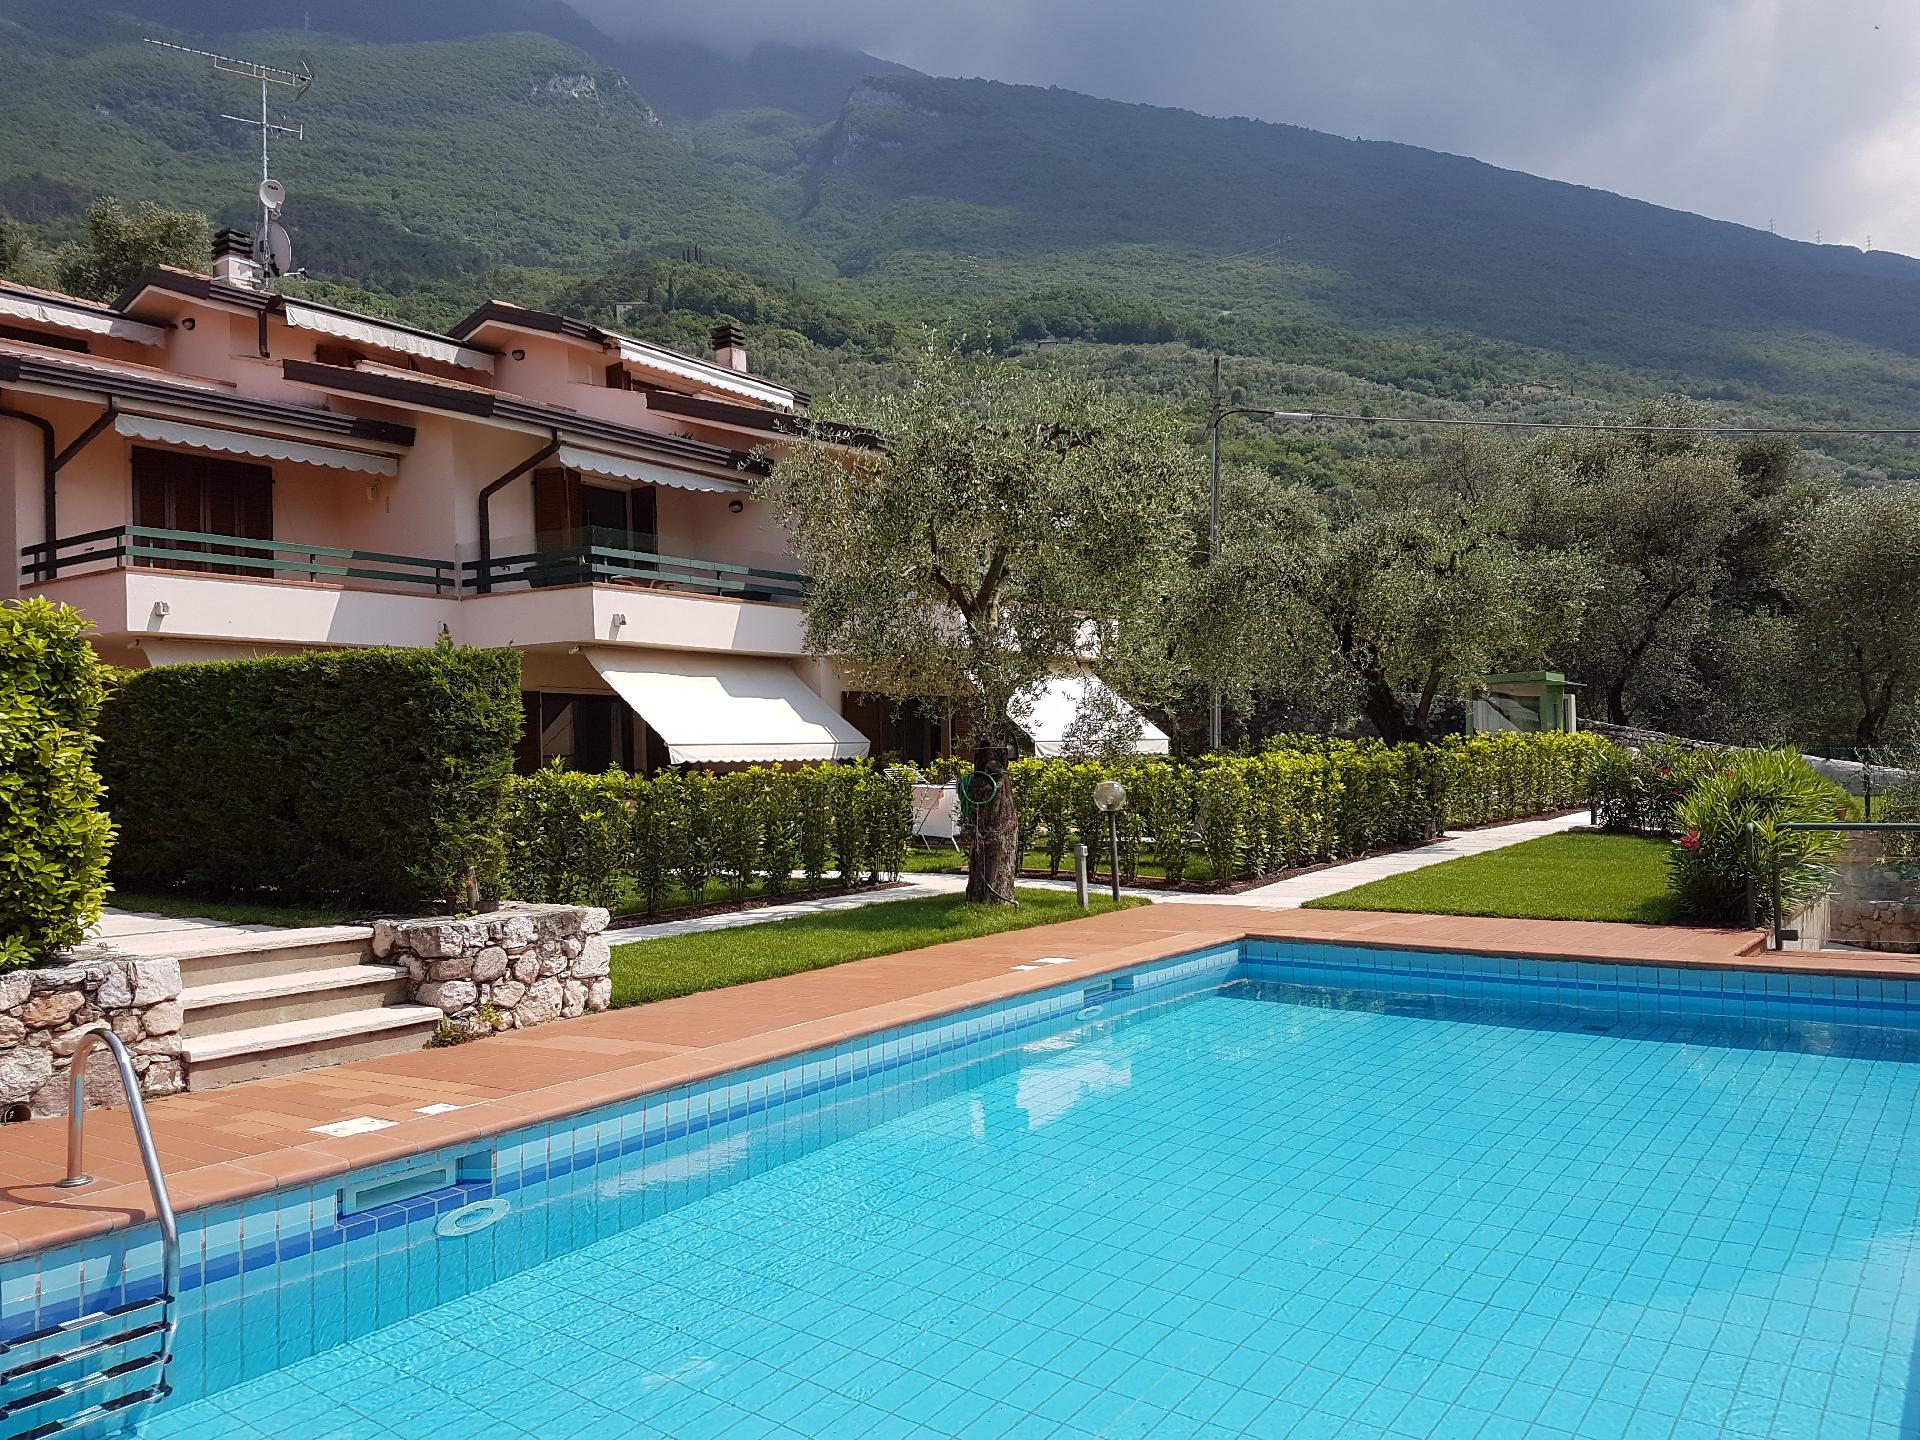 Ferienwohnung für 5 Personen ca. 65 m² i Ferienhaus in Italien